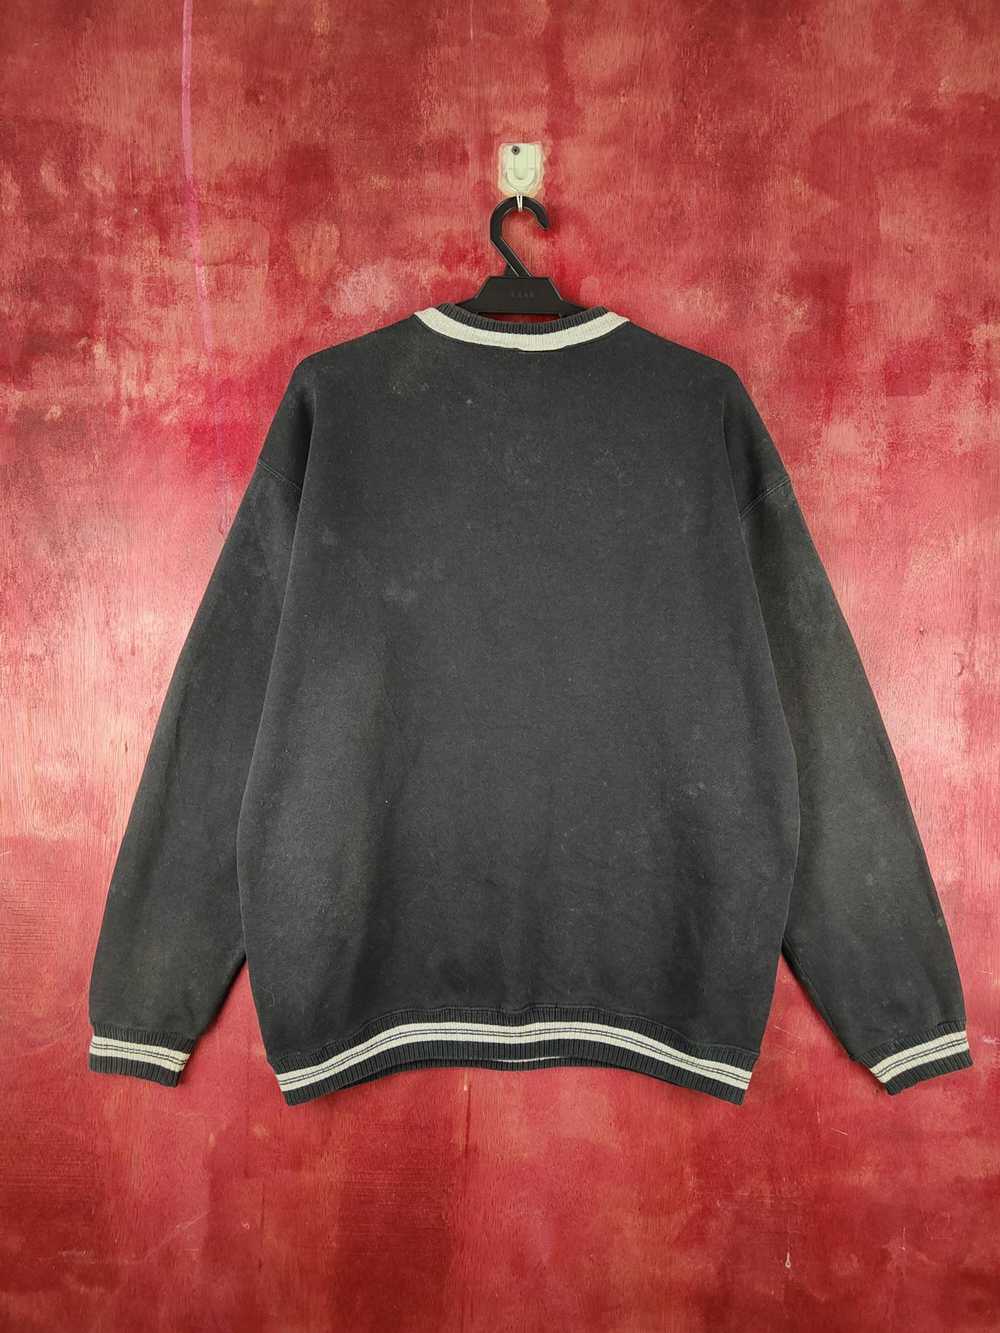 Streetwear × Vintage Discus Black Faded Sweatshir… - image 7